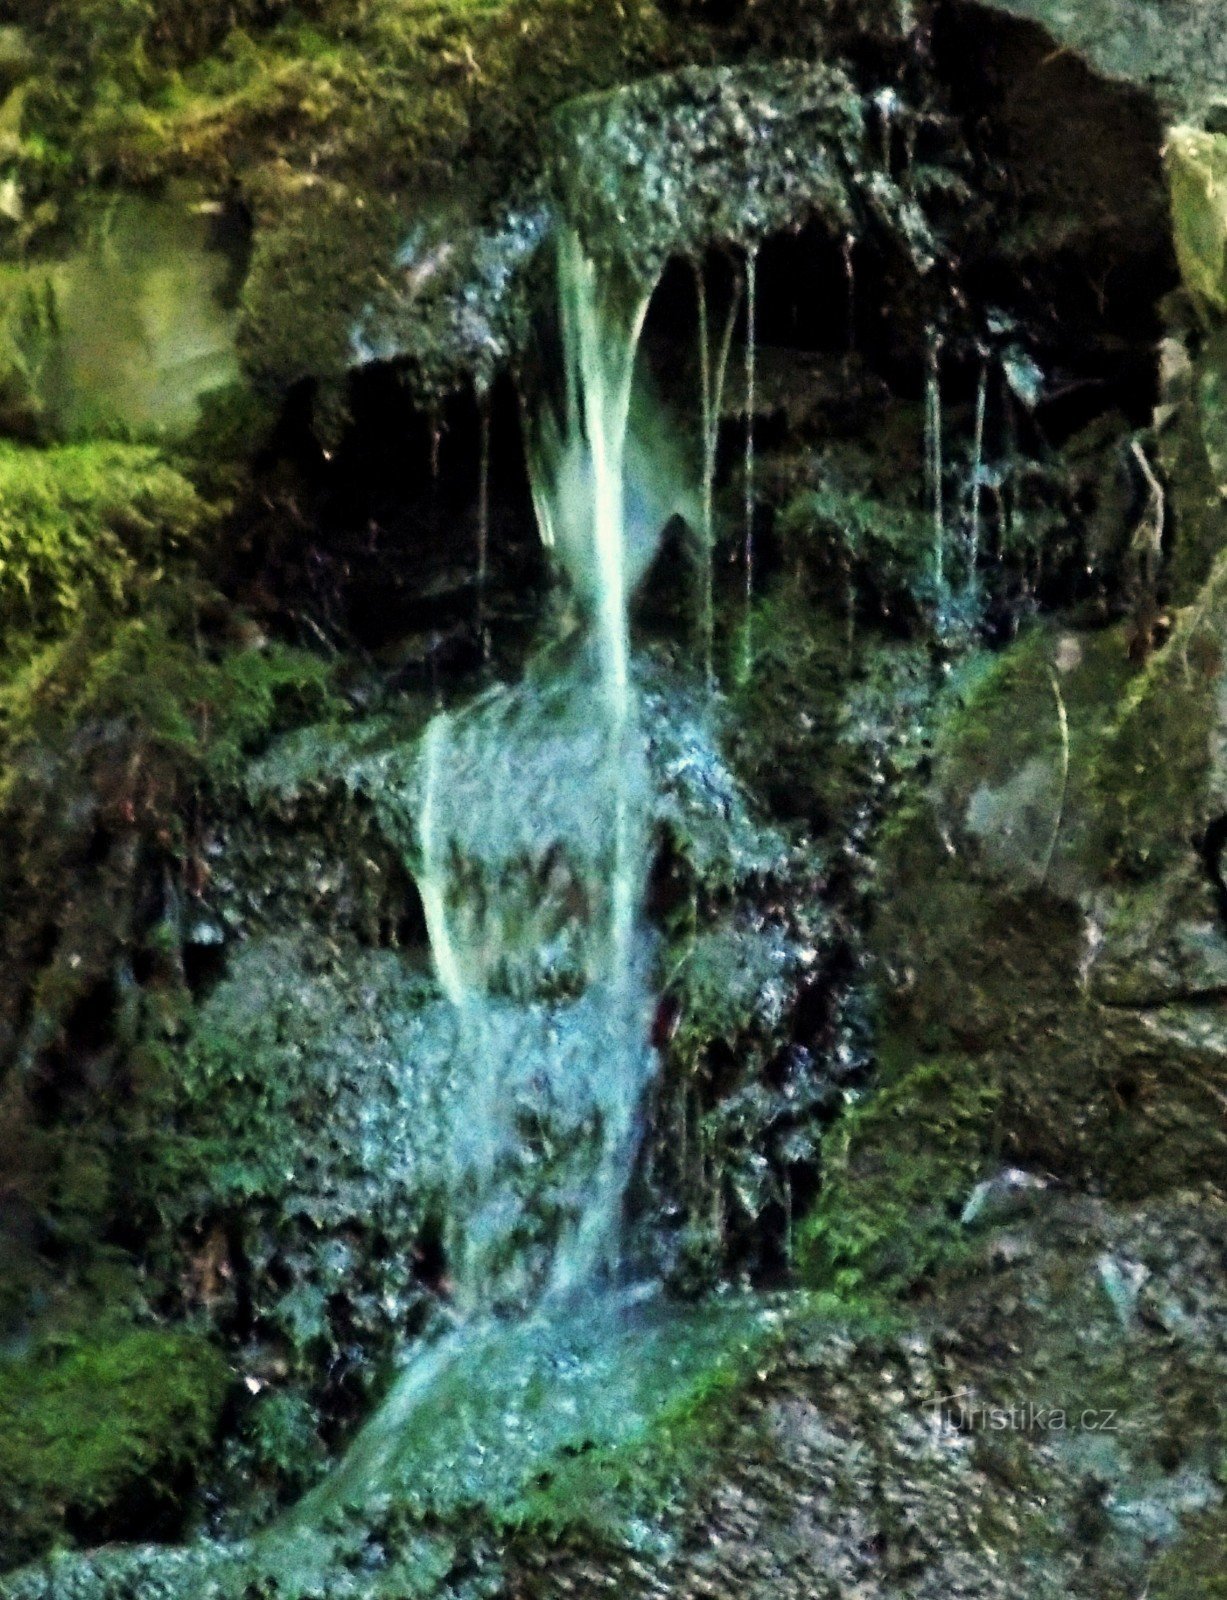 Jarní vodopád nad osadou Rybáře u městečka Drahotuše